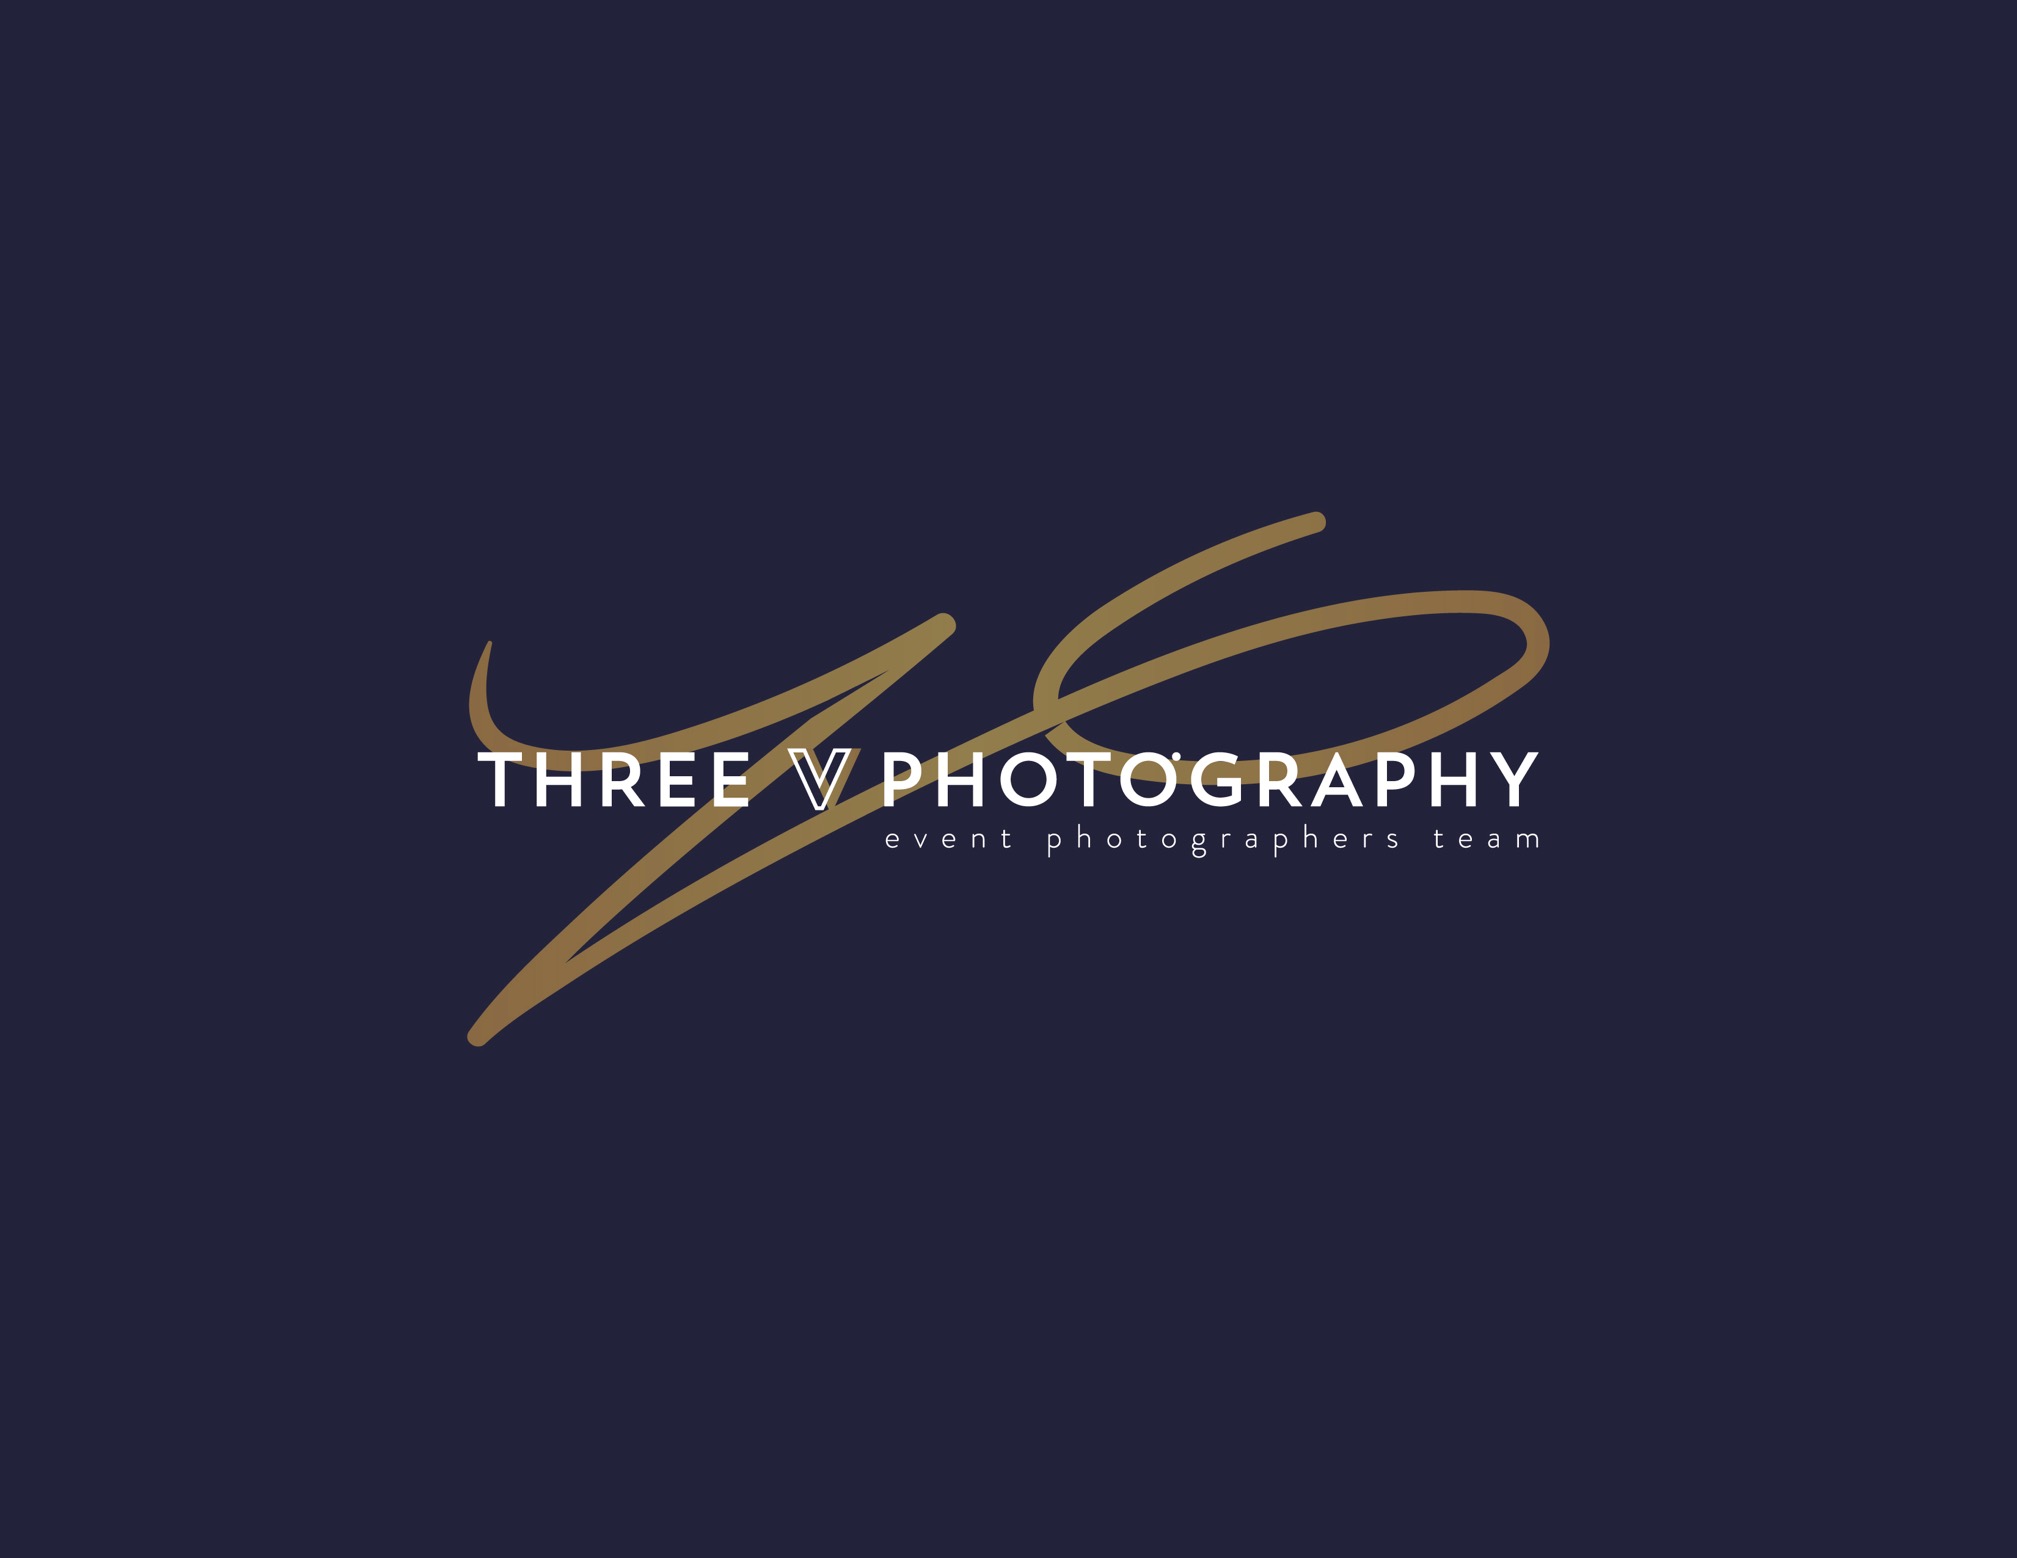 Three V Photography